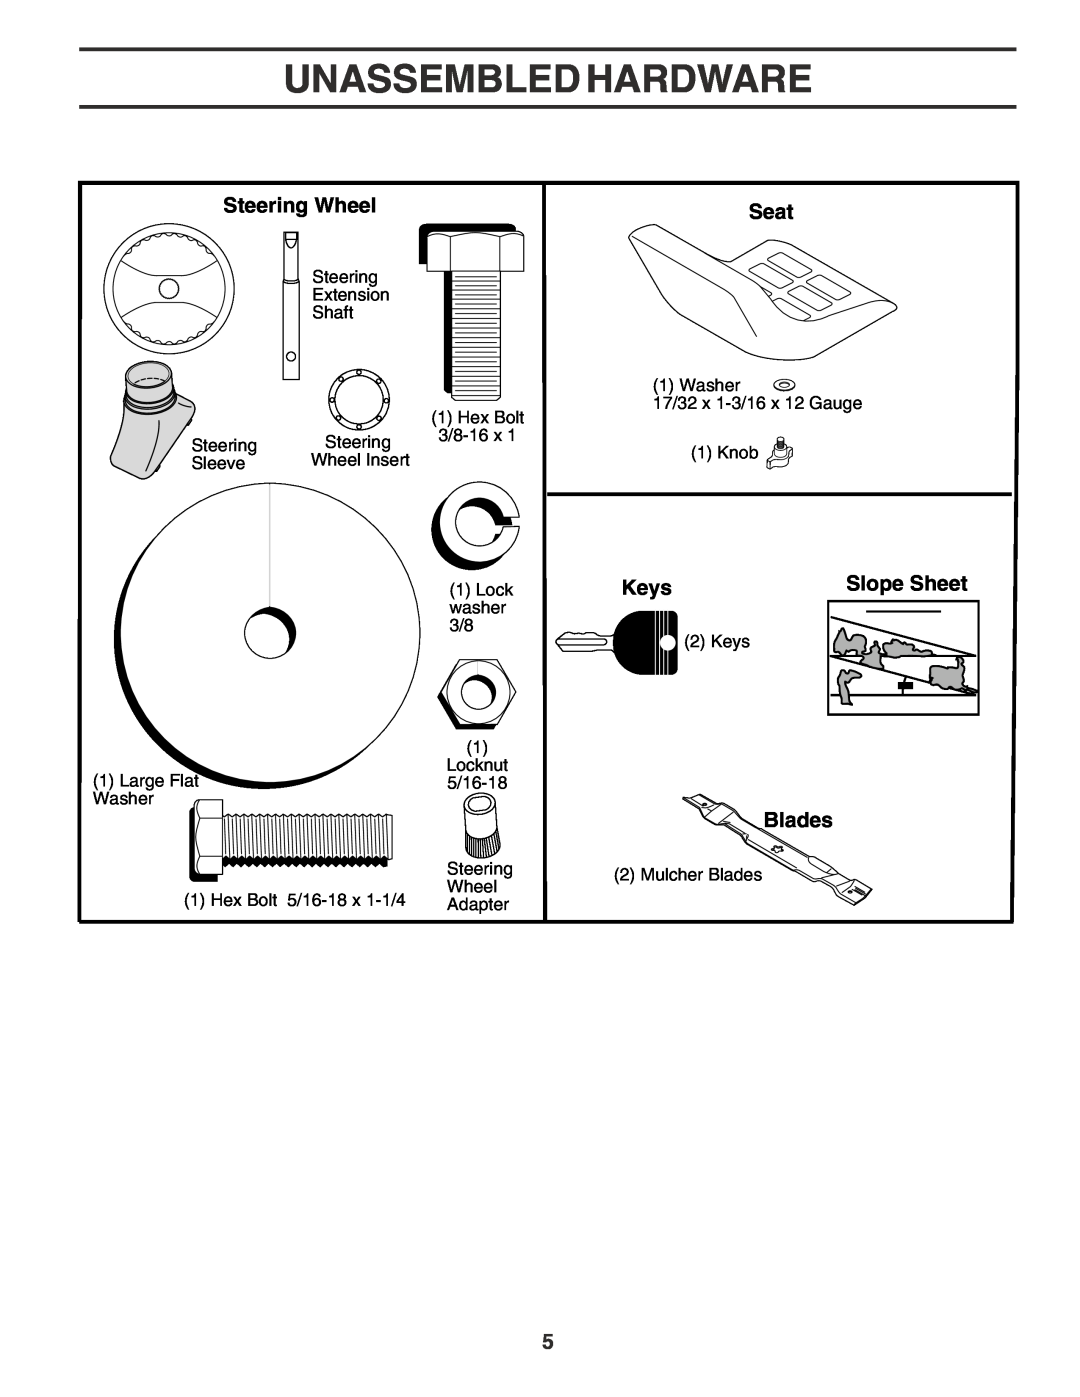 Poulan 180196 owner manual Unassembled Hardware, Steering Wheel, Seat, Keys, Slope Sheet, Blades 